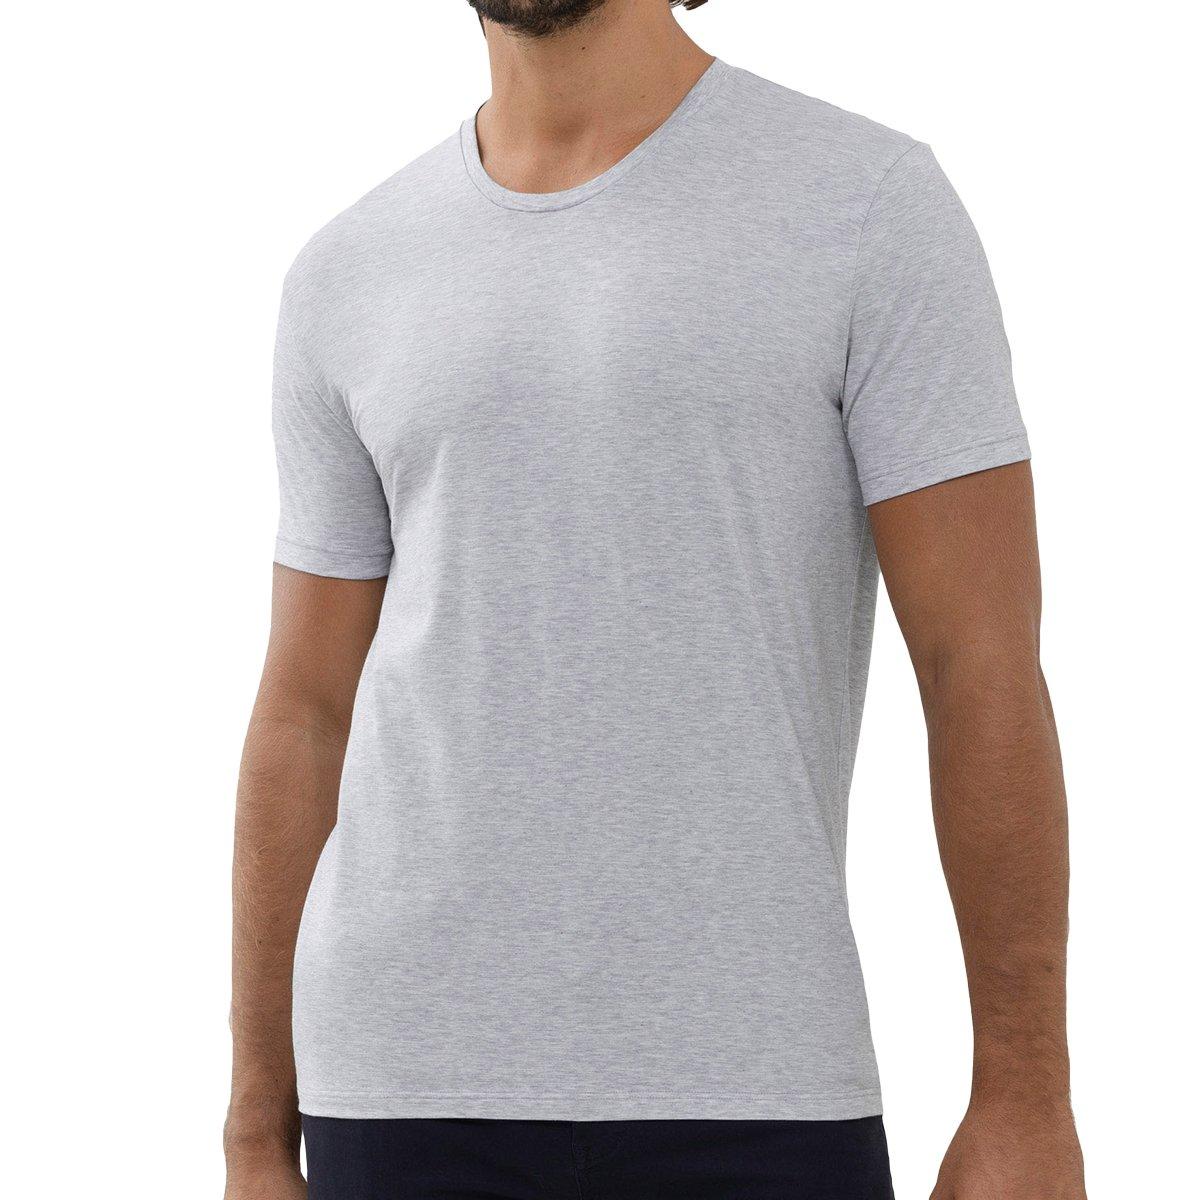 Dry Cotton - Unterhemd Shirt Kurzarm Herren Grau L von mey